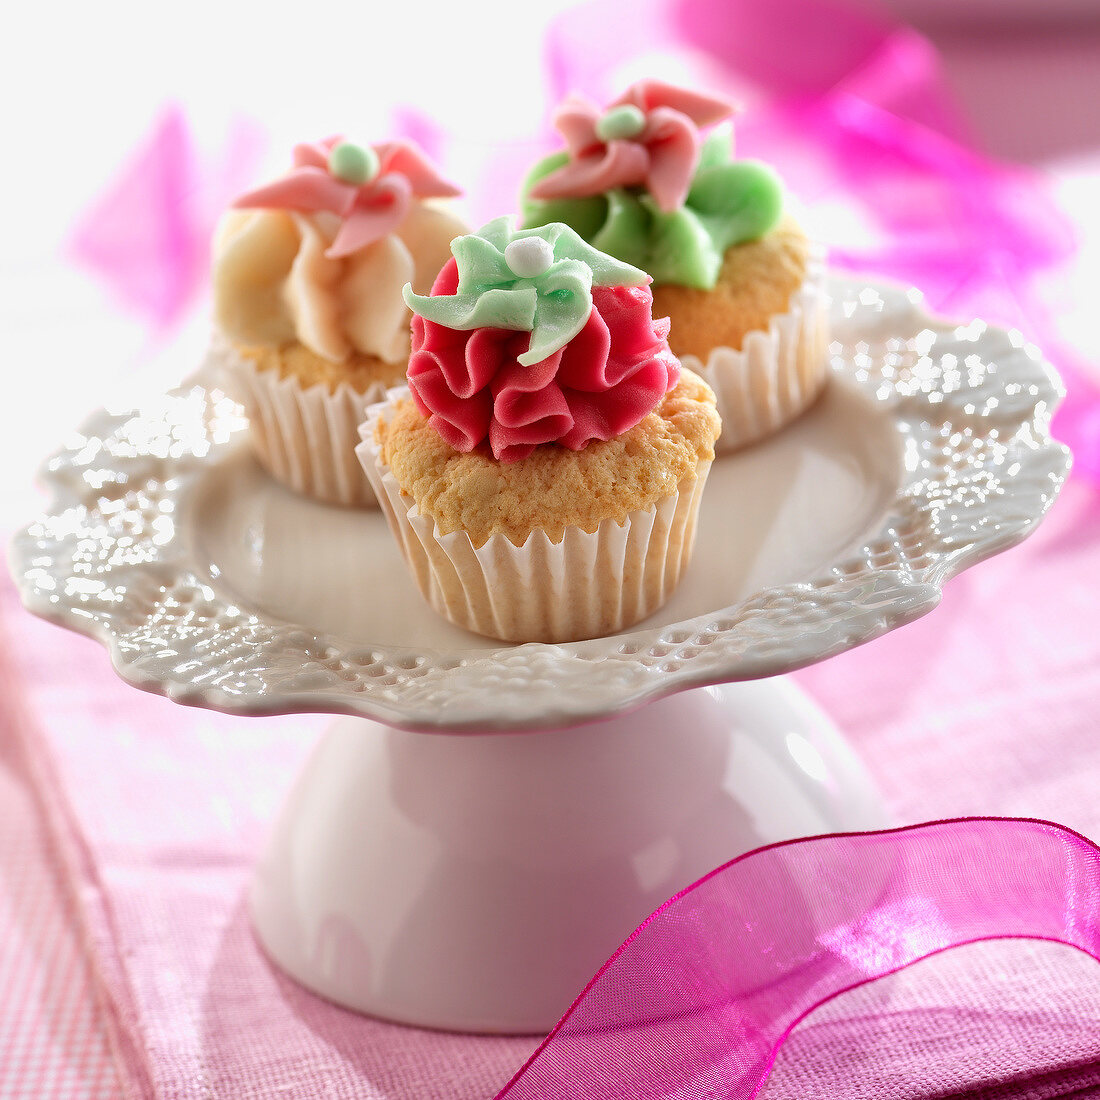 Cupcakes mit bunter Creme in Blütenform verziert